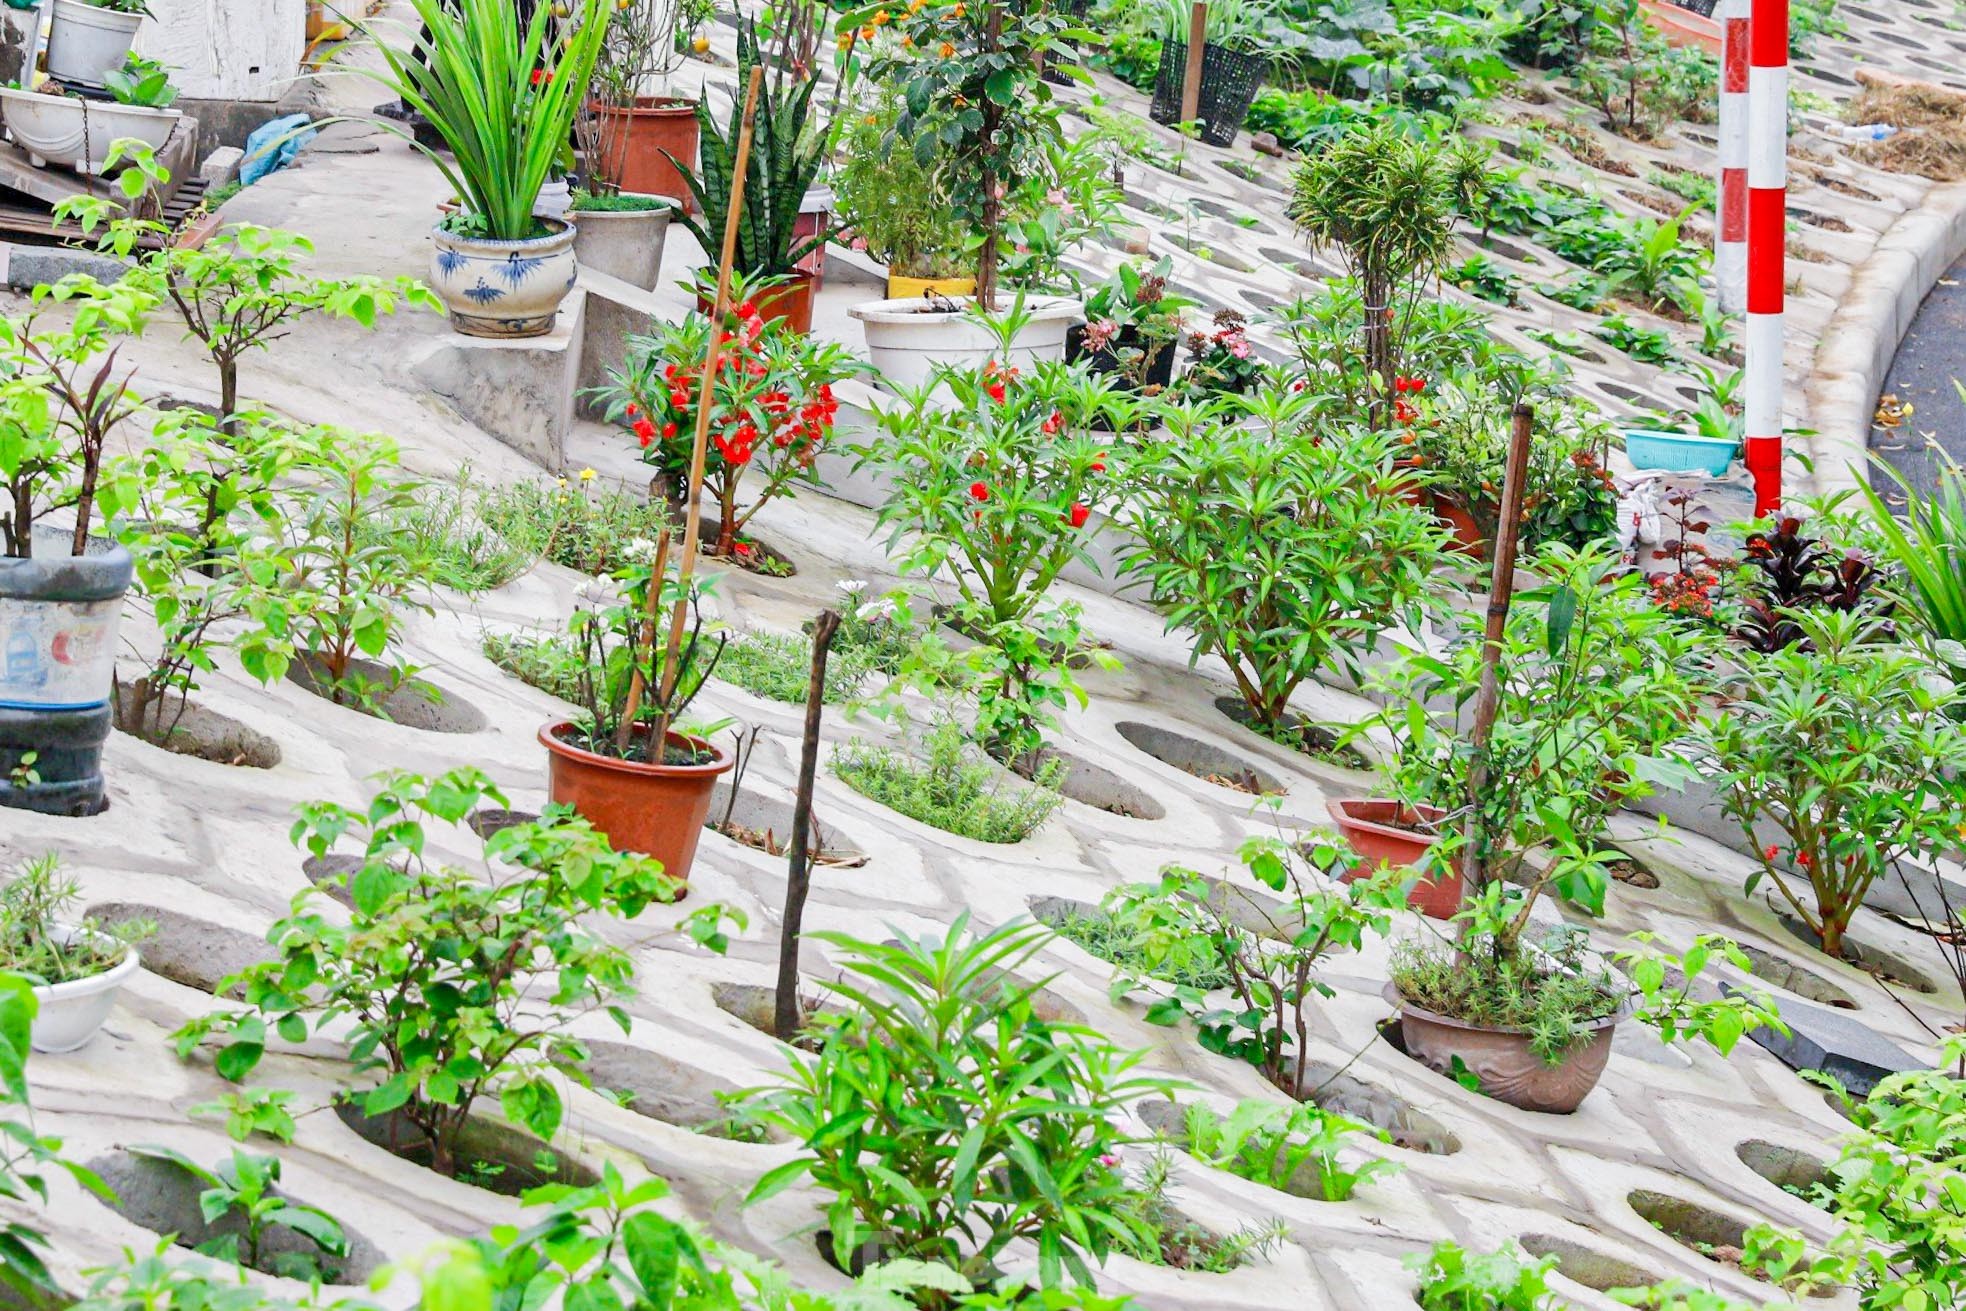 Trên đê Nguyễn Khoái, chỗ trồng rau phủ xanh, chỗ ngập rác ô nhiễm- Ảnh 6.